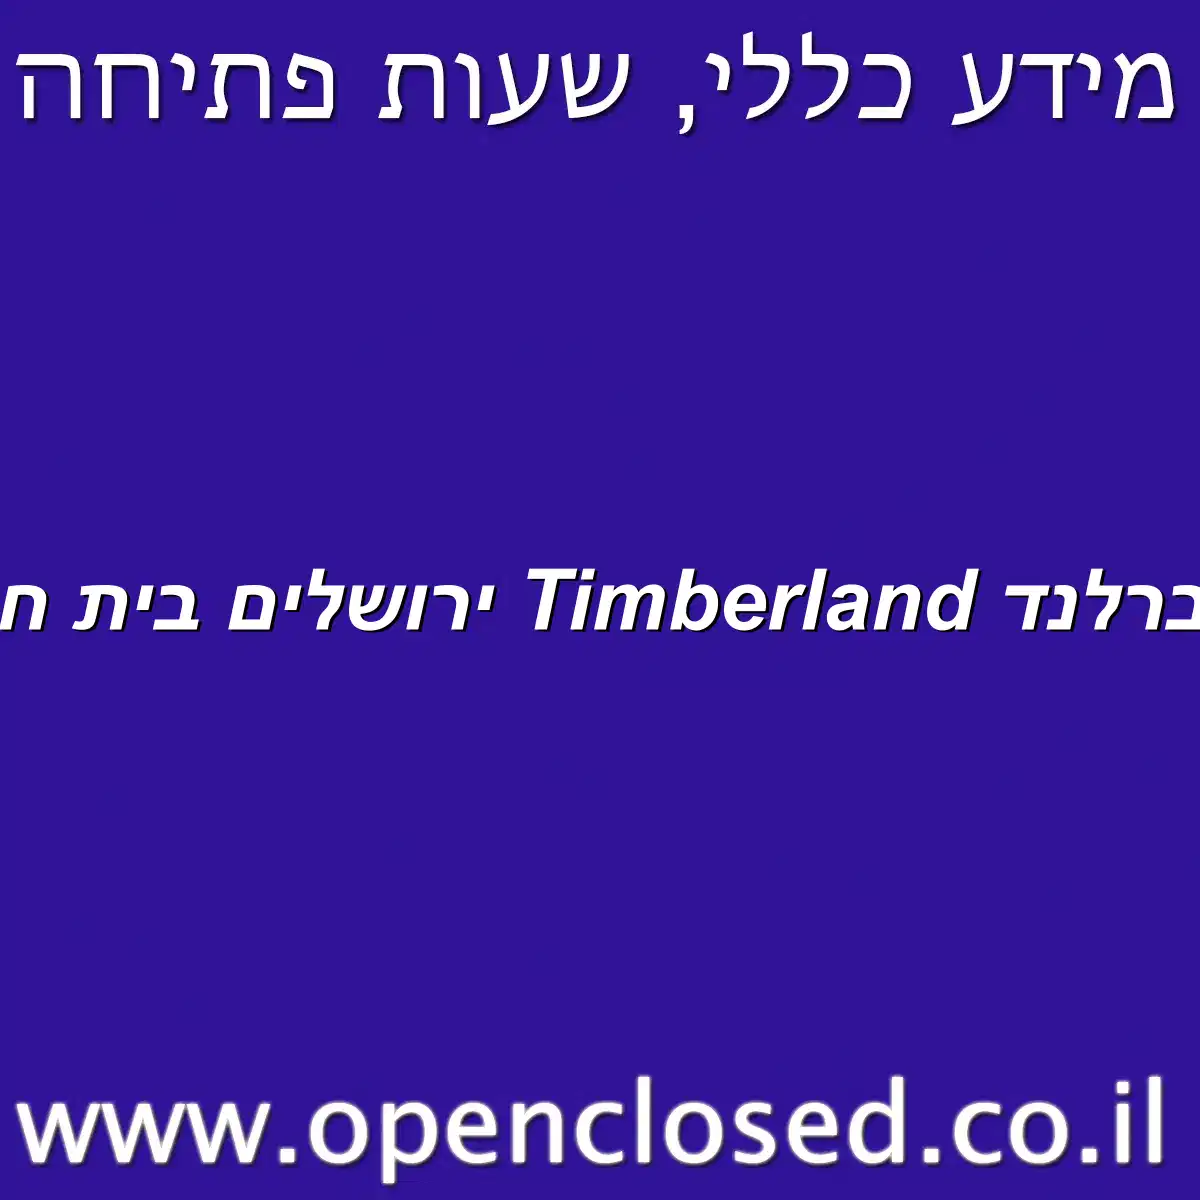 טימברלנד Timberland ירושלים בית חנינא